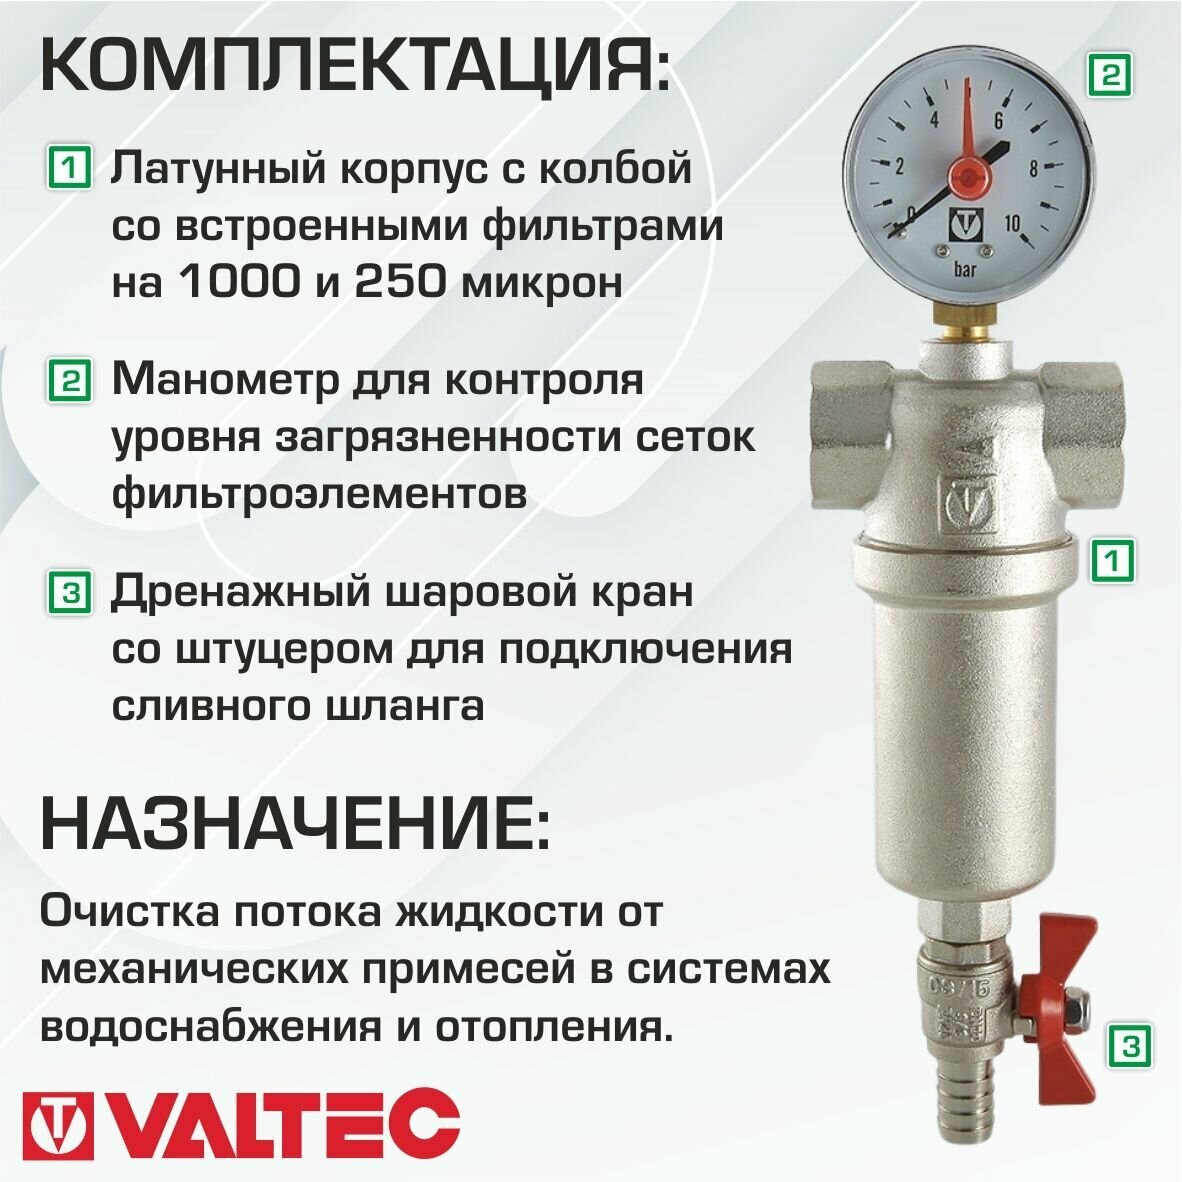 Водопроводные фильтры Valtec - фото №6